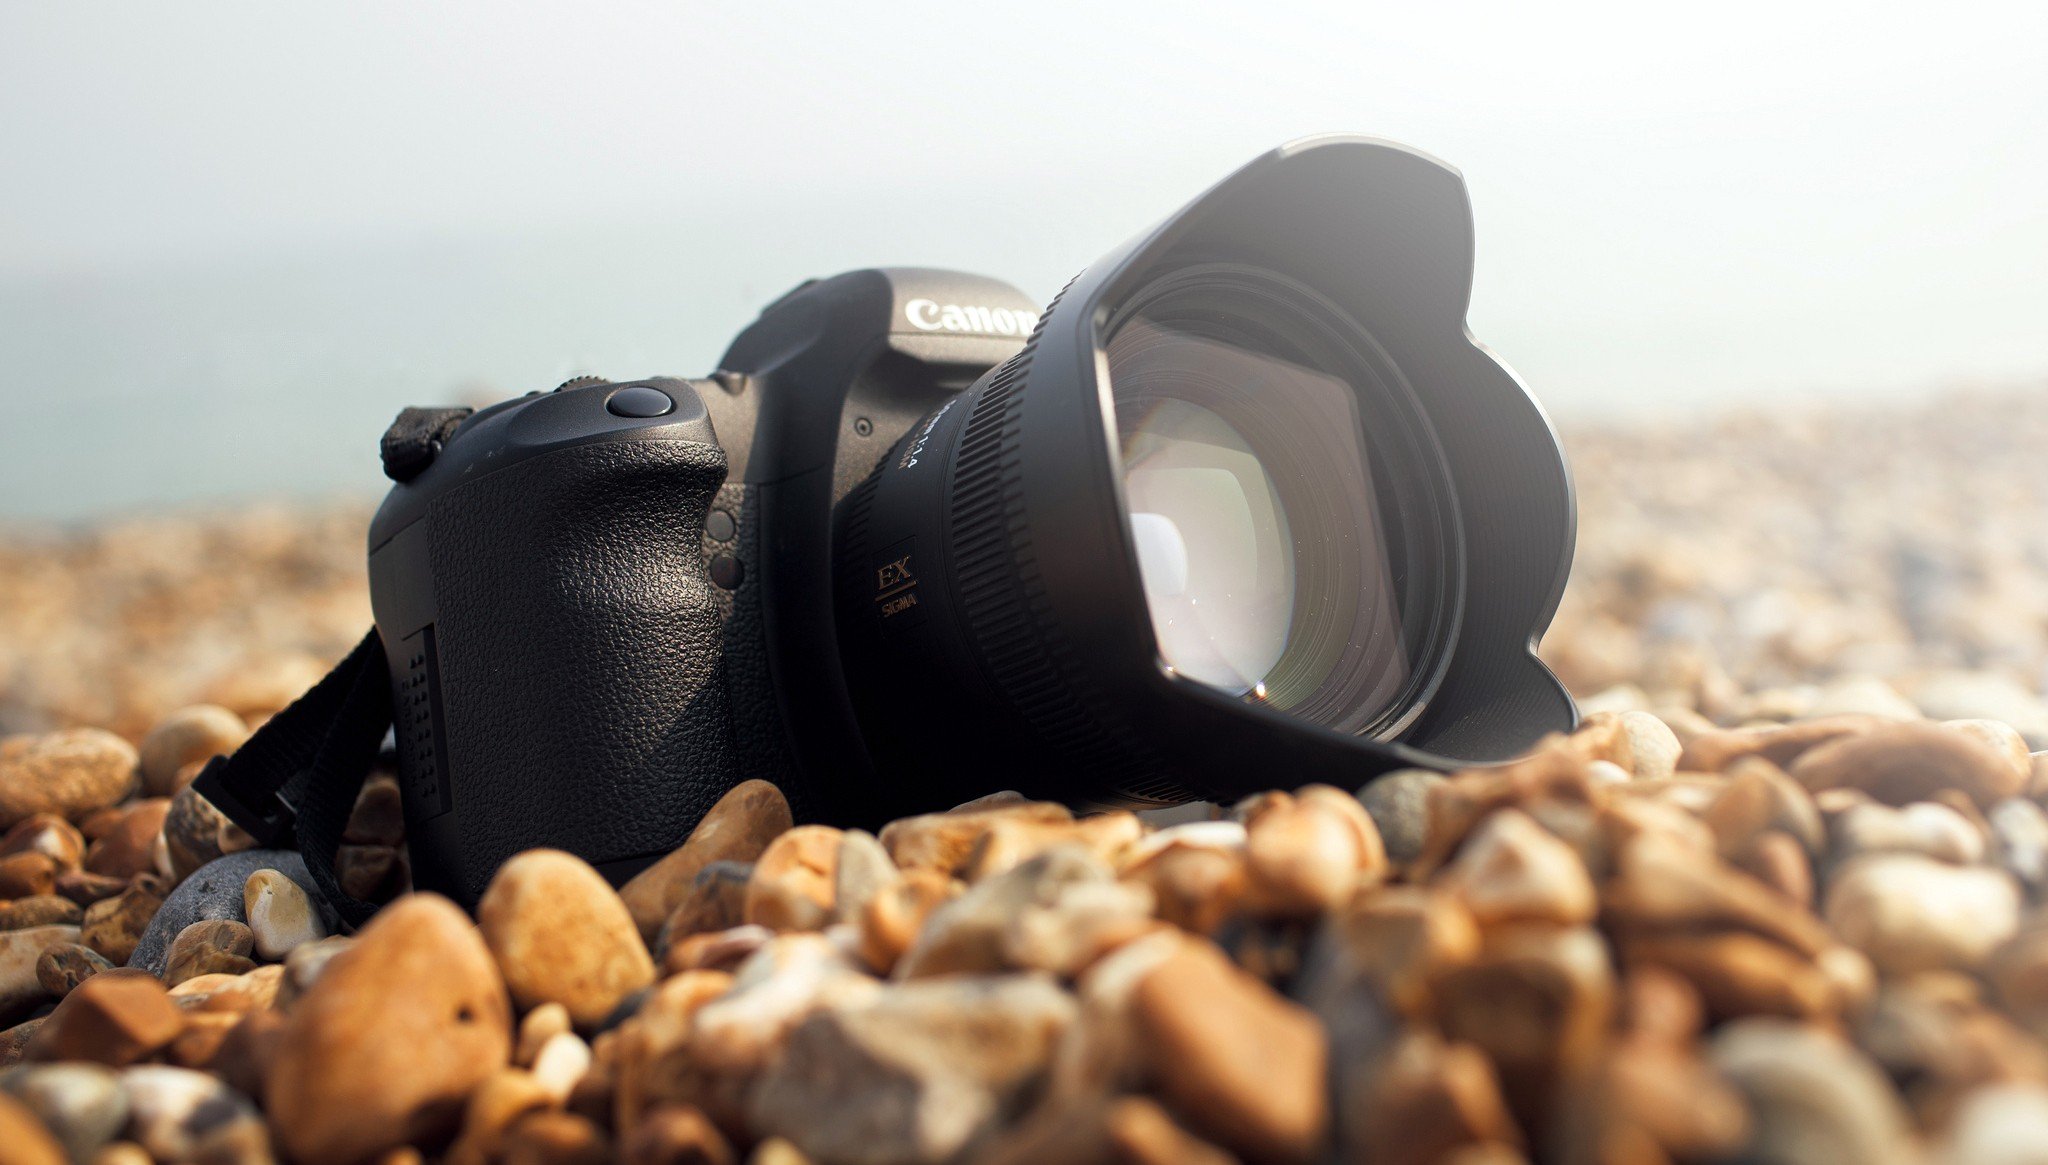 Canon Camera On Beach - HD Wallpaper 